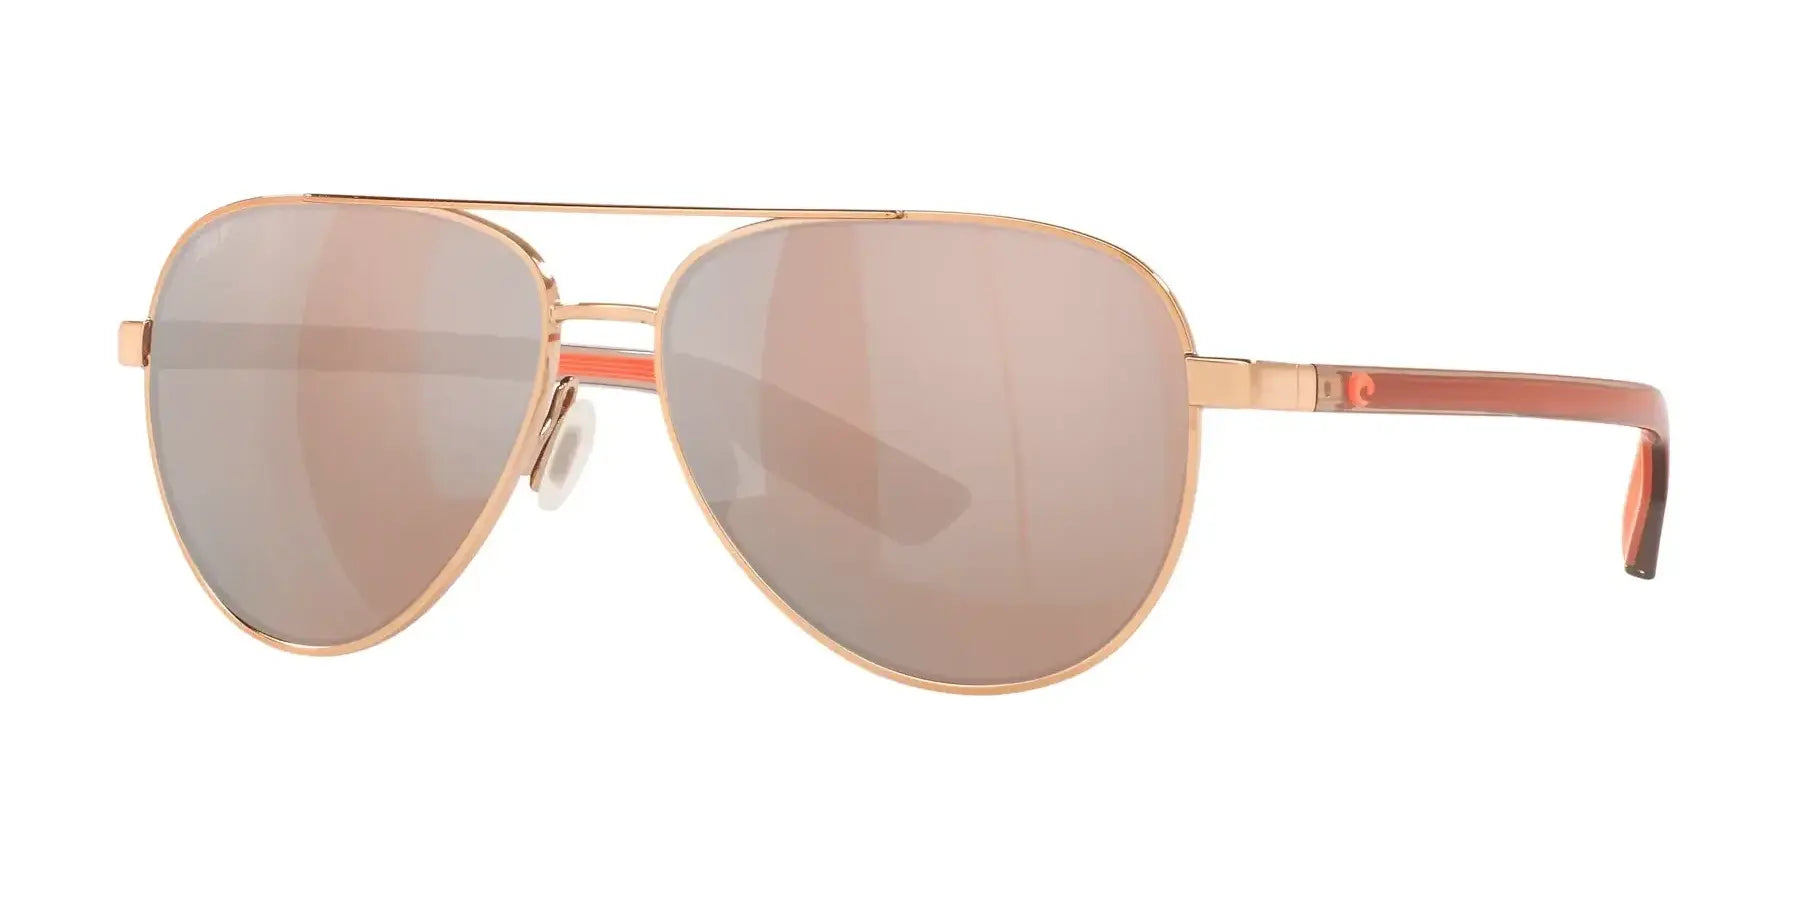 Costa PELI 6S4002 Sunglasses Shiny Rose Gold / Copper Silver Mirror